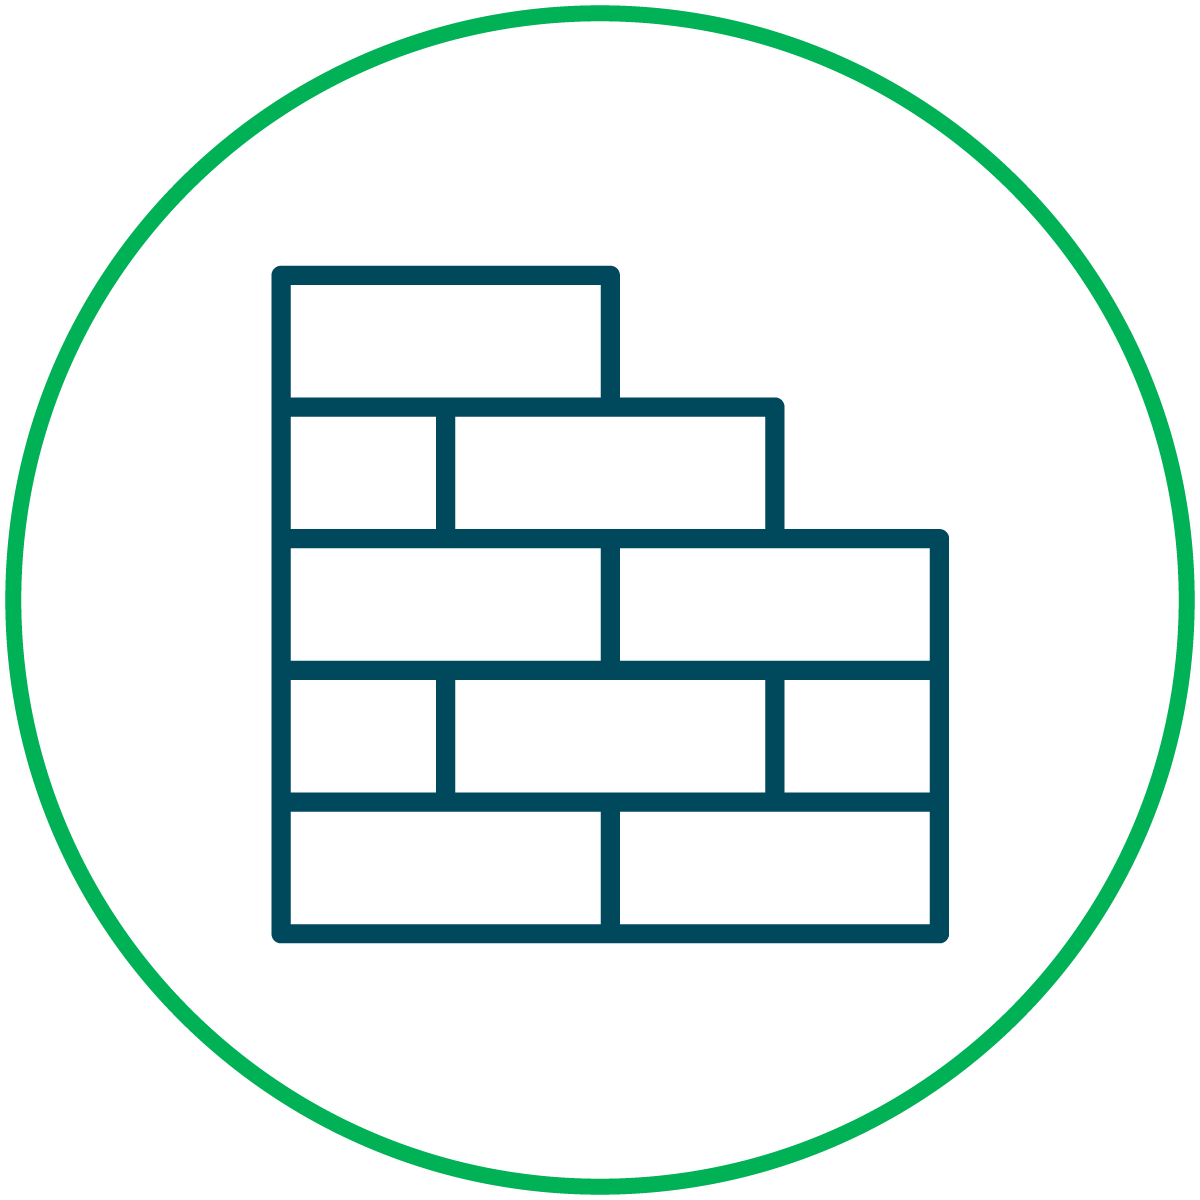 building block icon